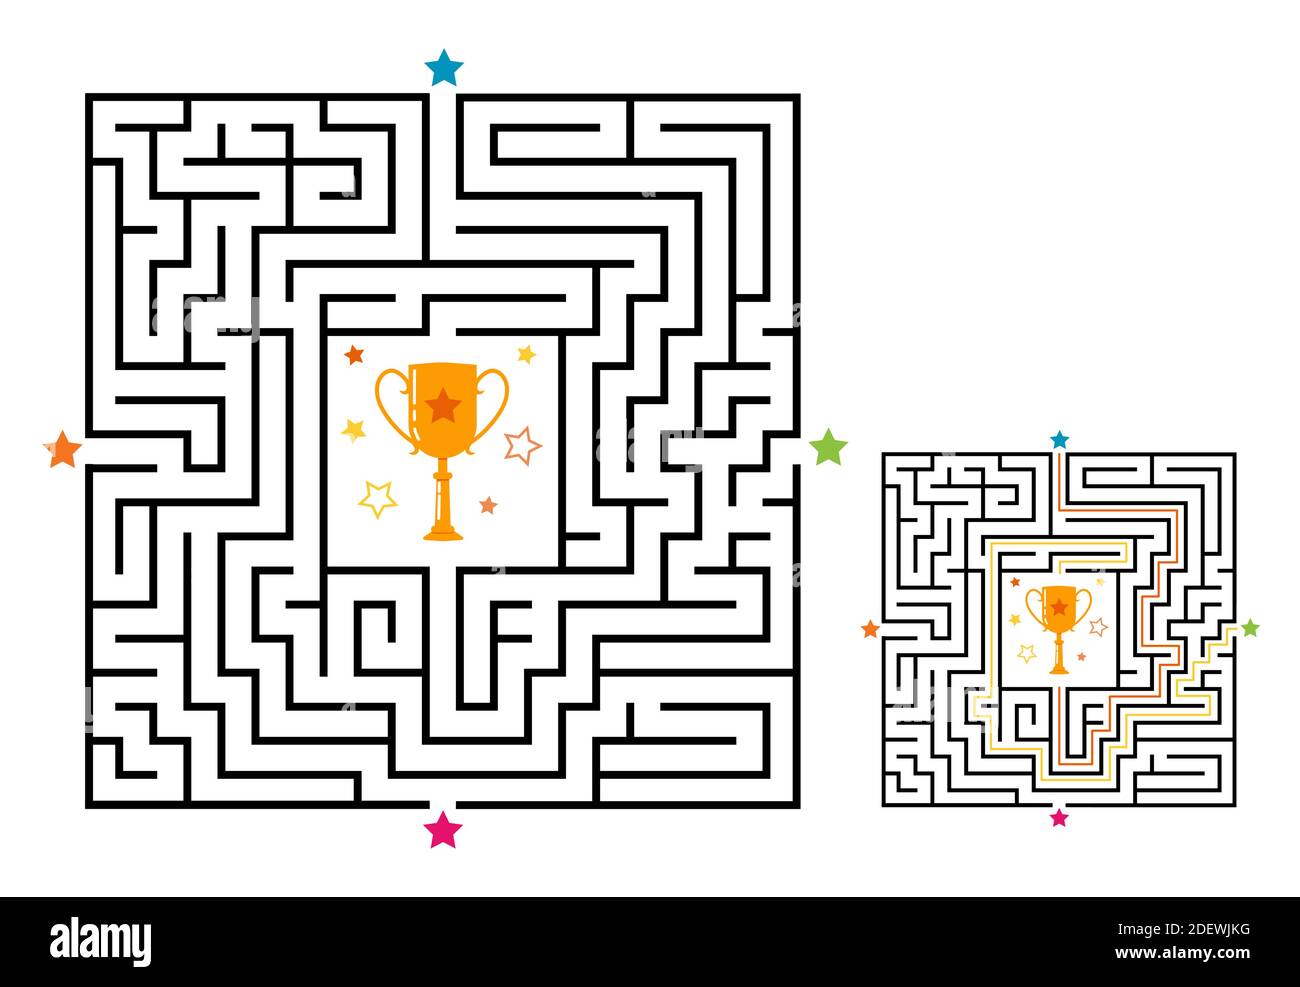 Labirinto quadrato gioco labirinto per bambini. Logica labirintica con coppa vincitrice. Quattro ingressi e una strada a destra per andare. Immagine piatta vettoriale Illustrazione Vettoriale